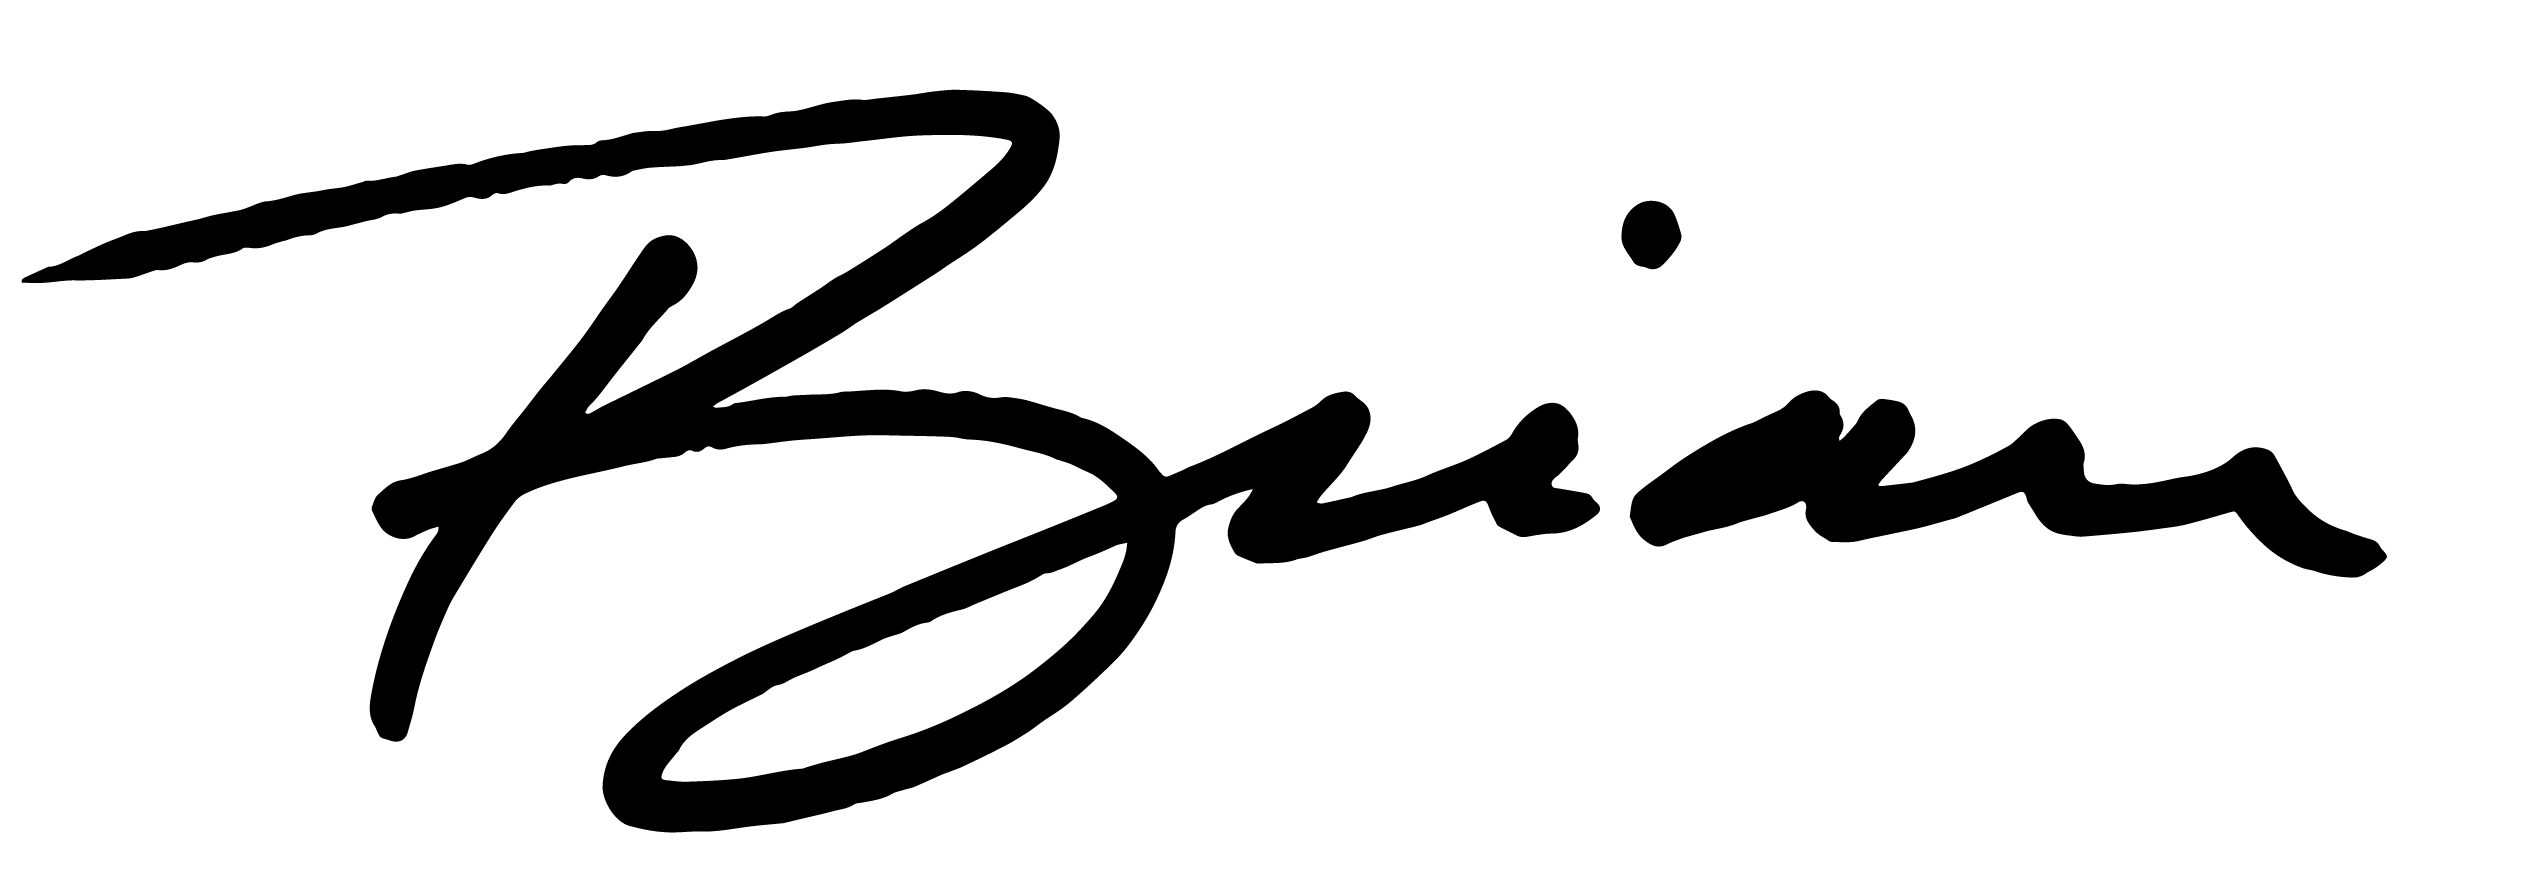 Brian Signature.png__PID:7bdc4495-d515-4a2e-8a8d-4b82d0e11997